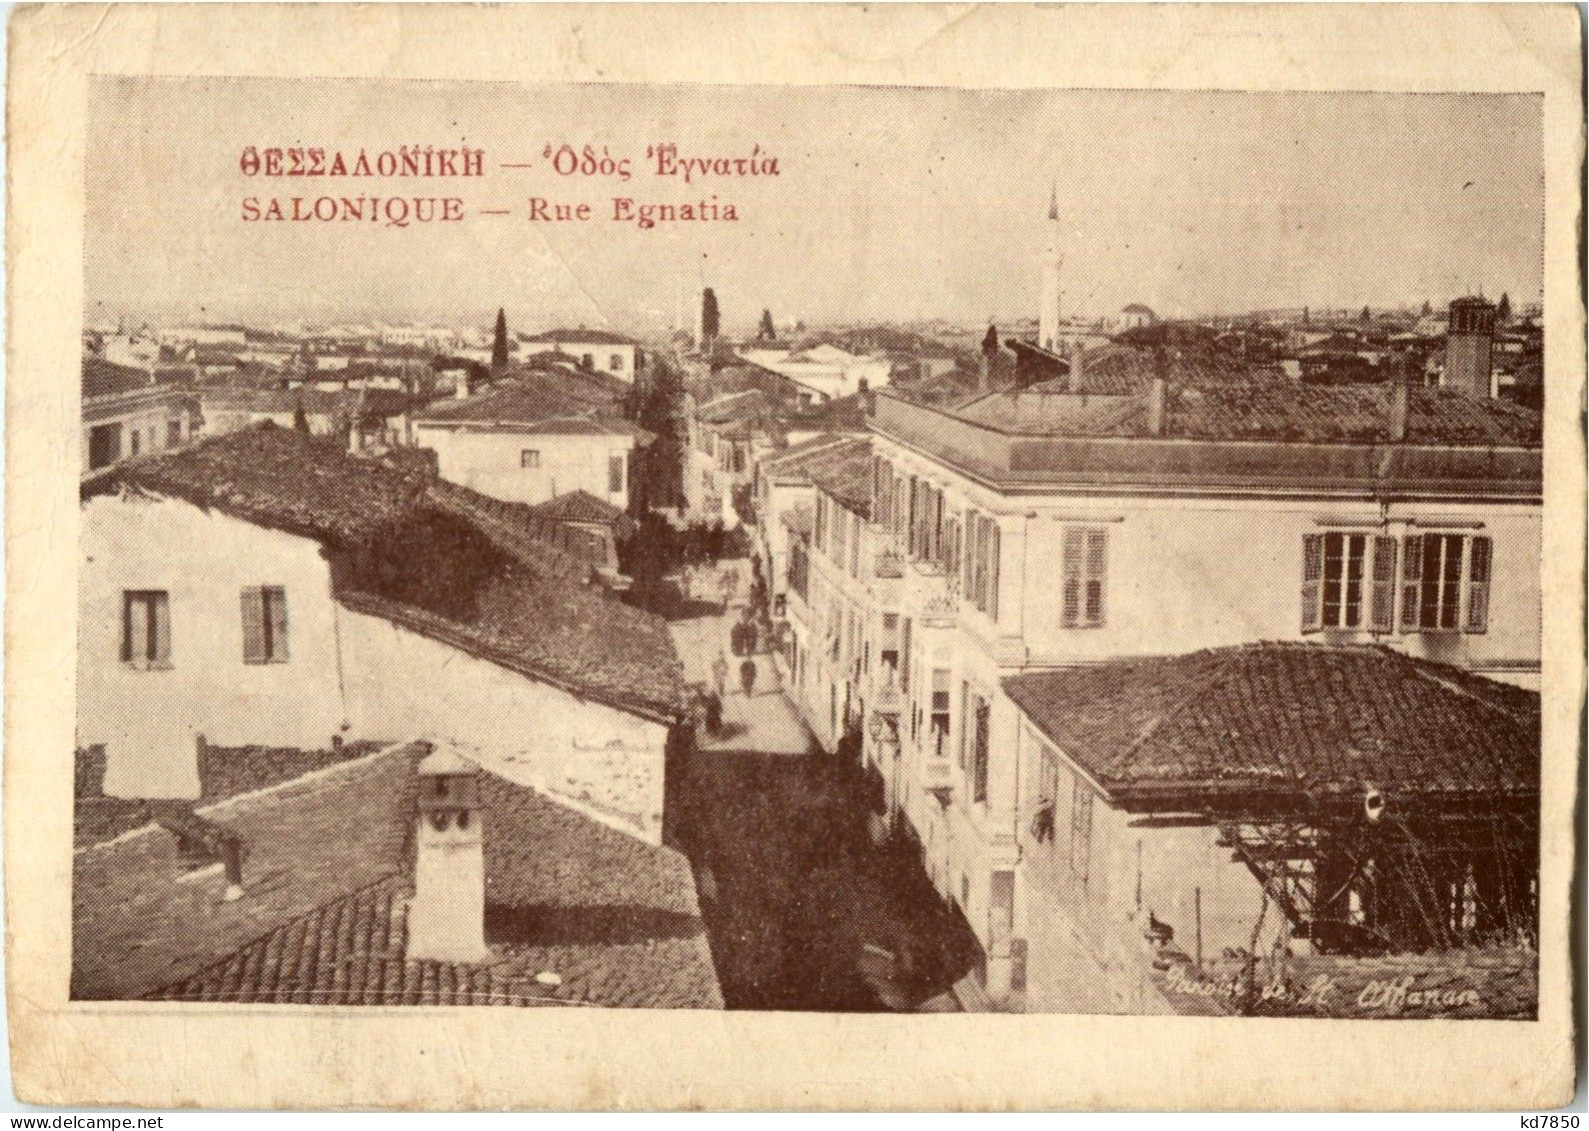 Salonique - Rue Egnatia - Grecia